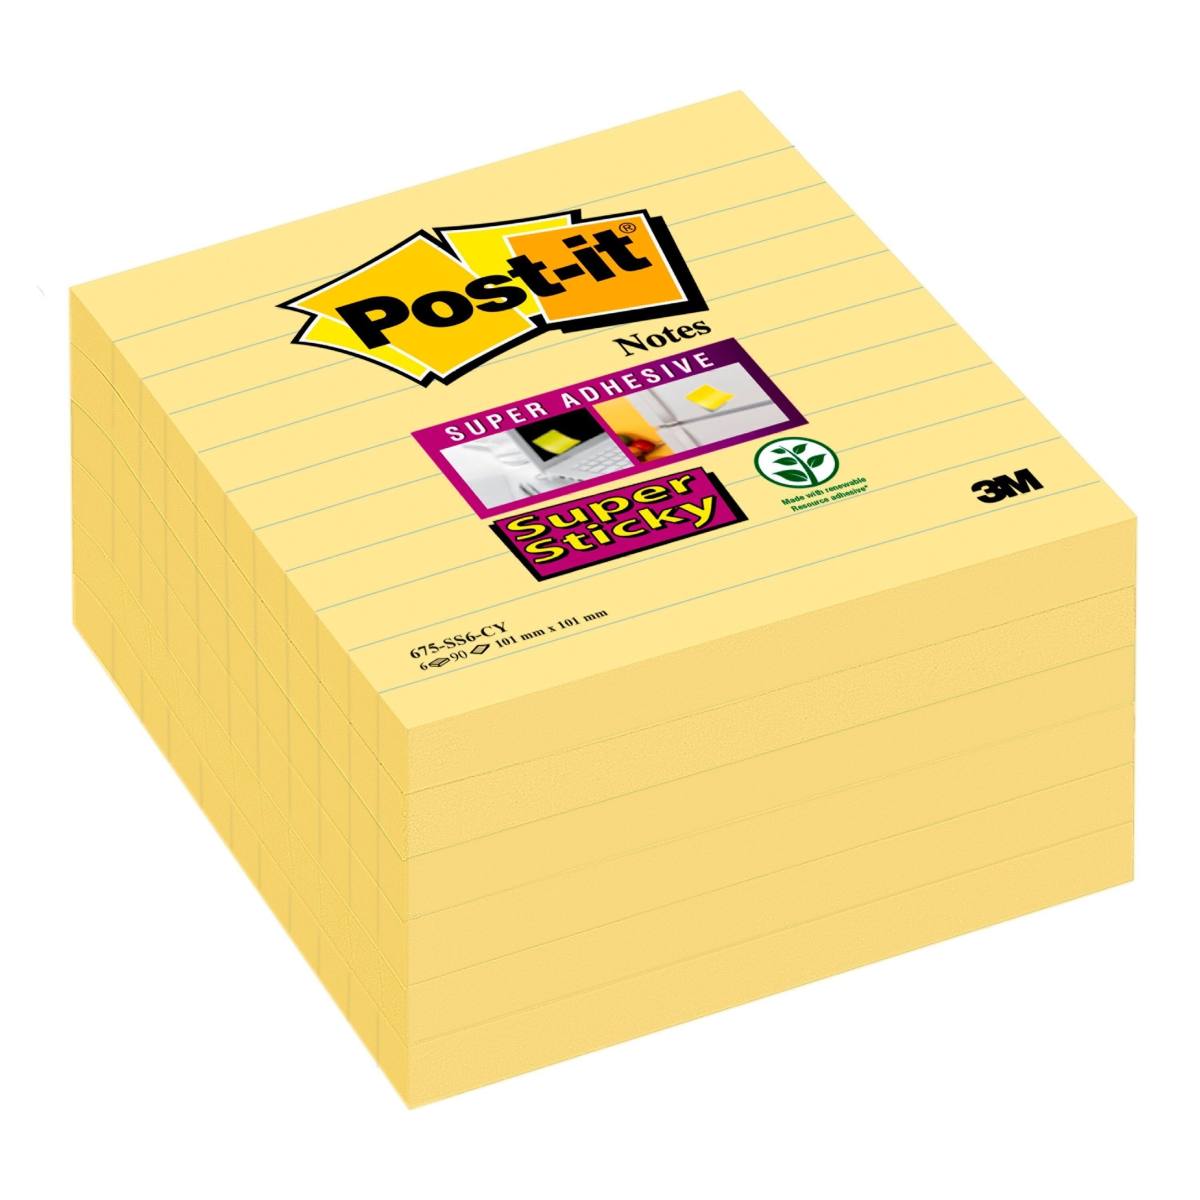 3M Post-it Super Sticky Notes 675-6SCY, 101 mm x 101 mm, geel, 6 blokken van 90 vellen elk